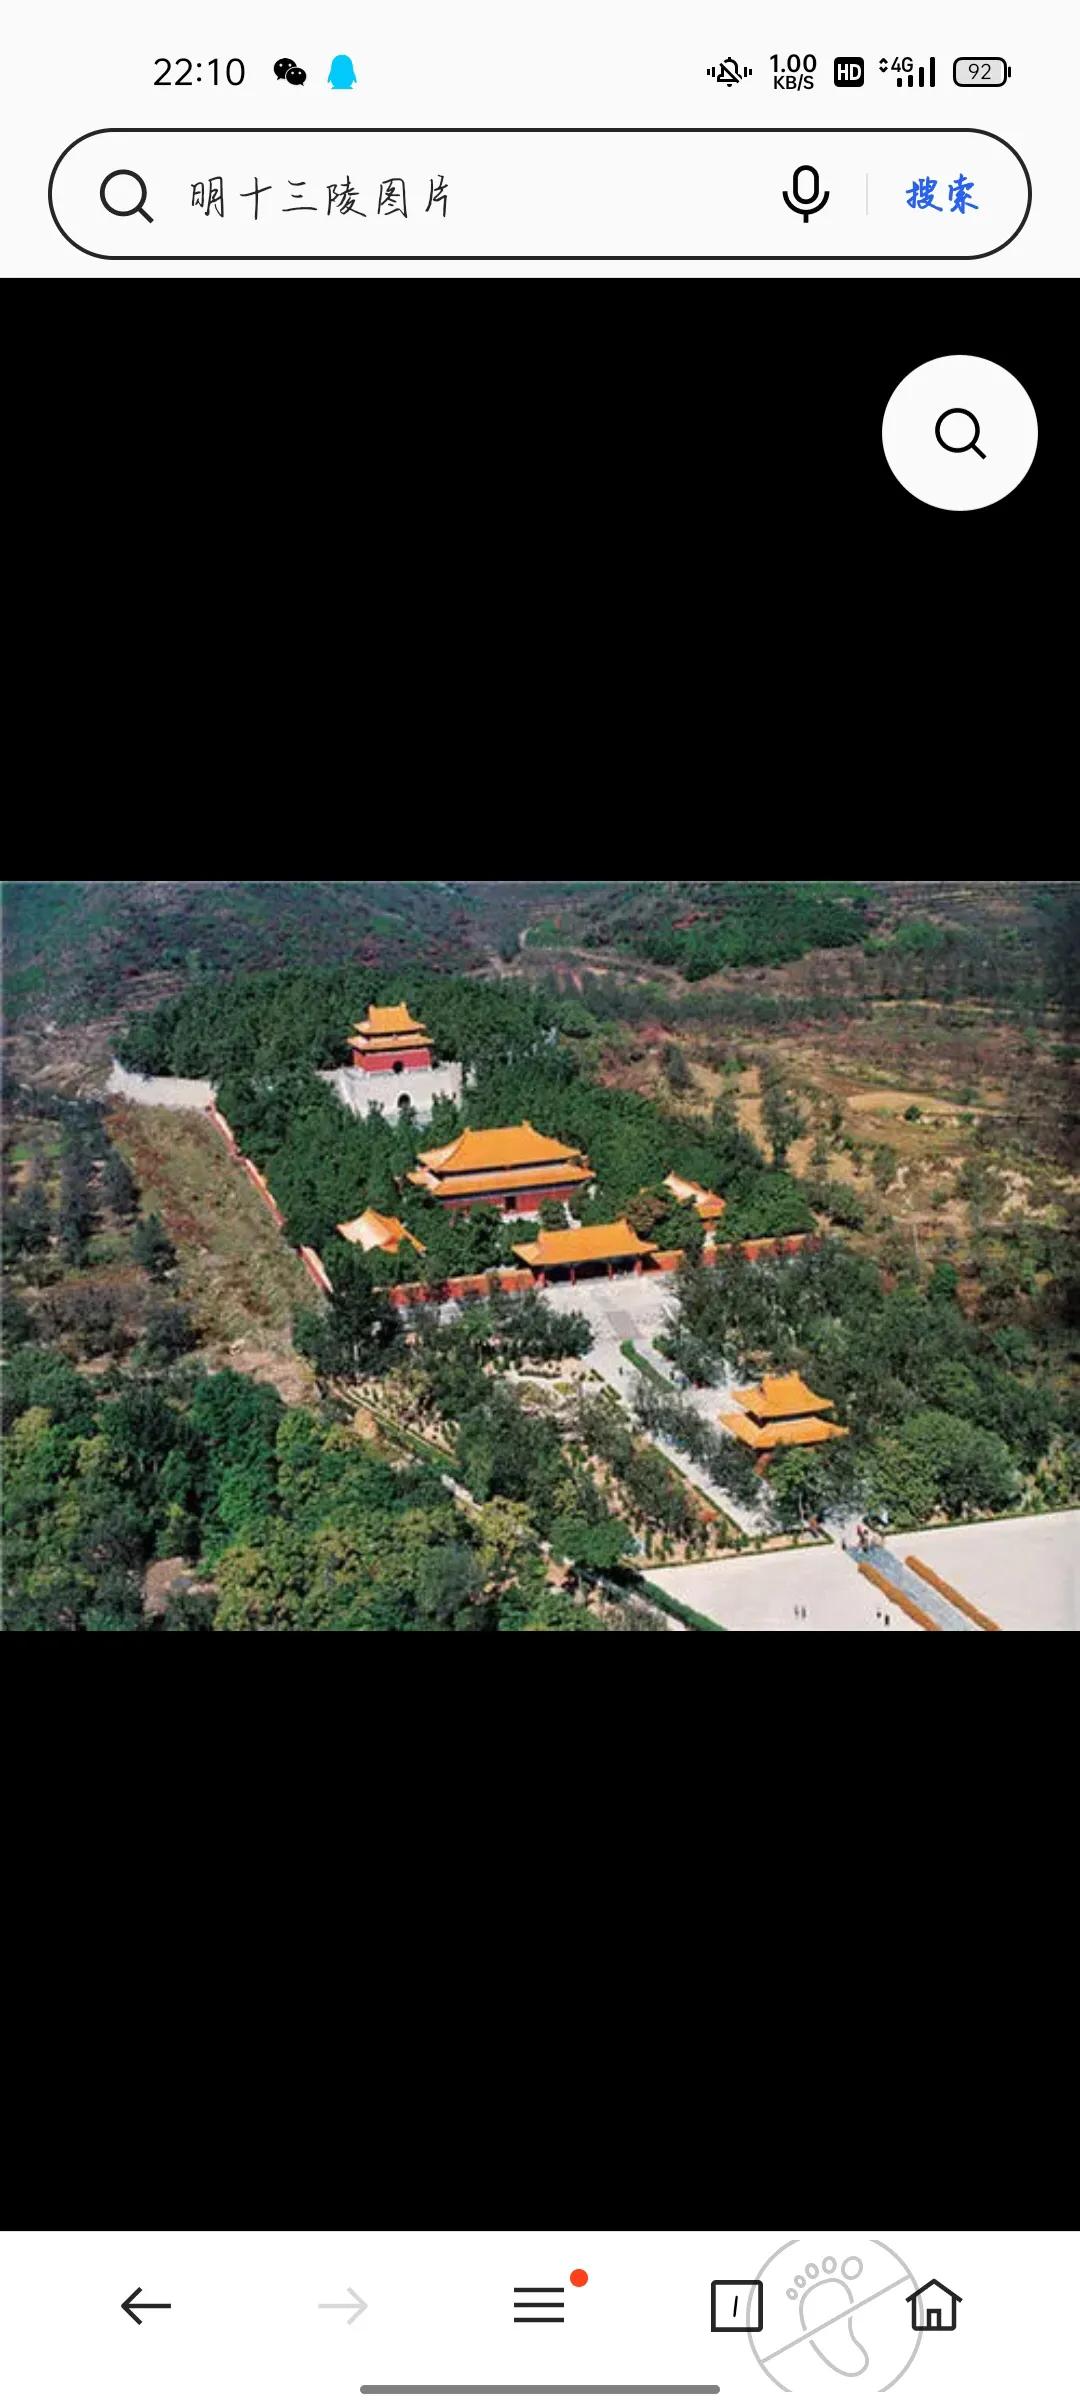 北京的著名景点有哪些 ？